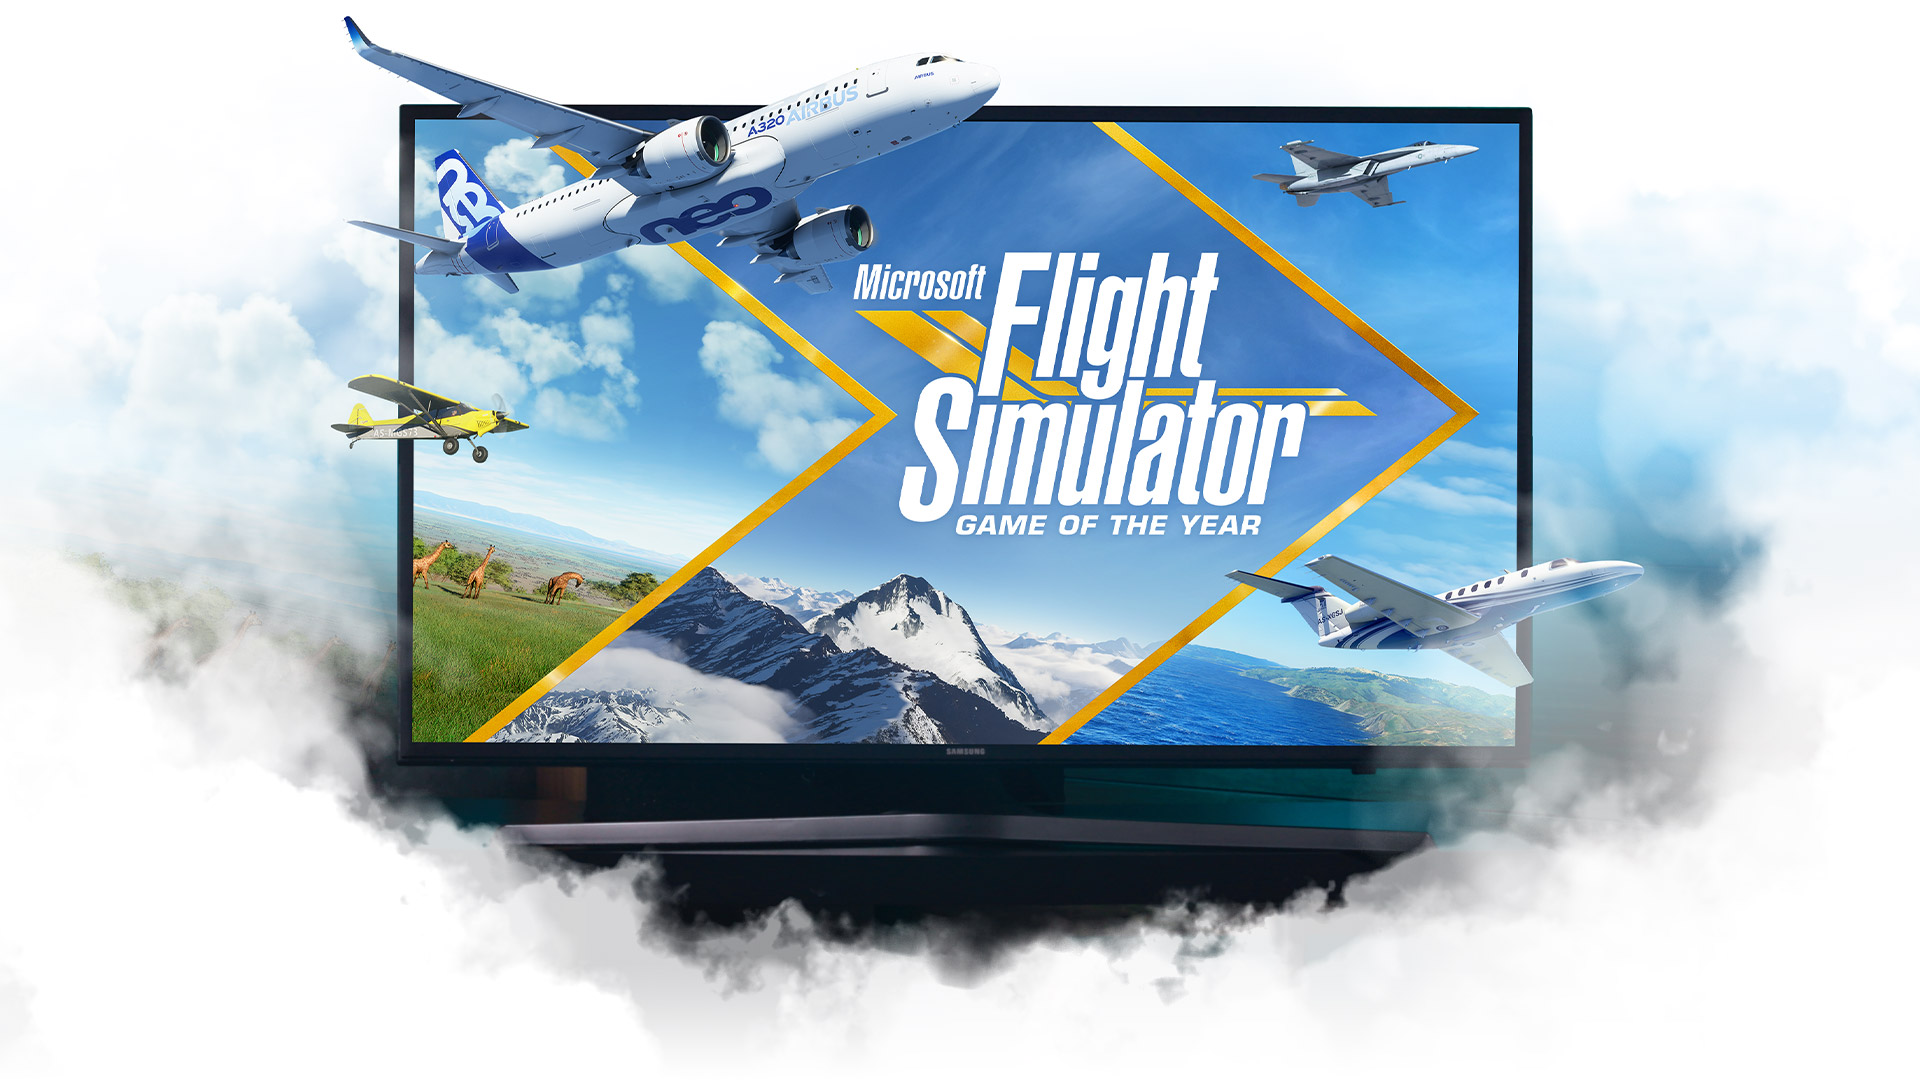 Avions de Microsoft Flight Simulator sortant d’une télévision entourée de nuages